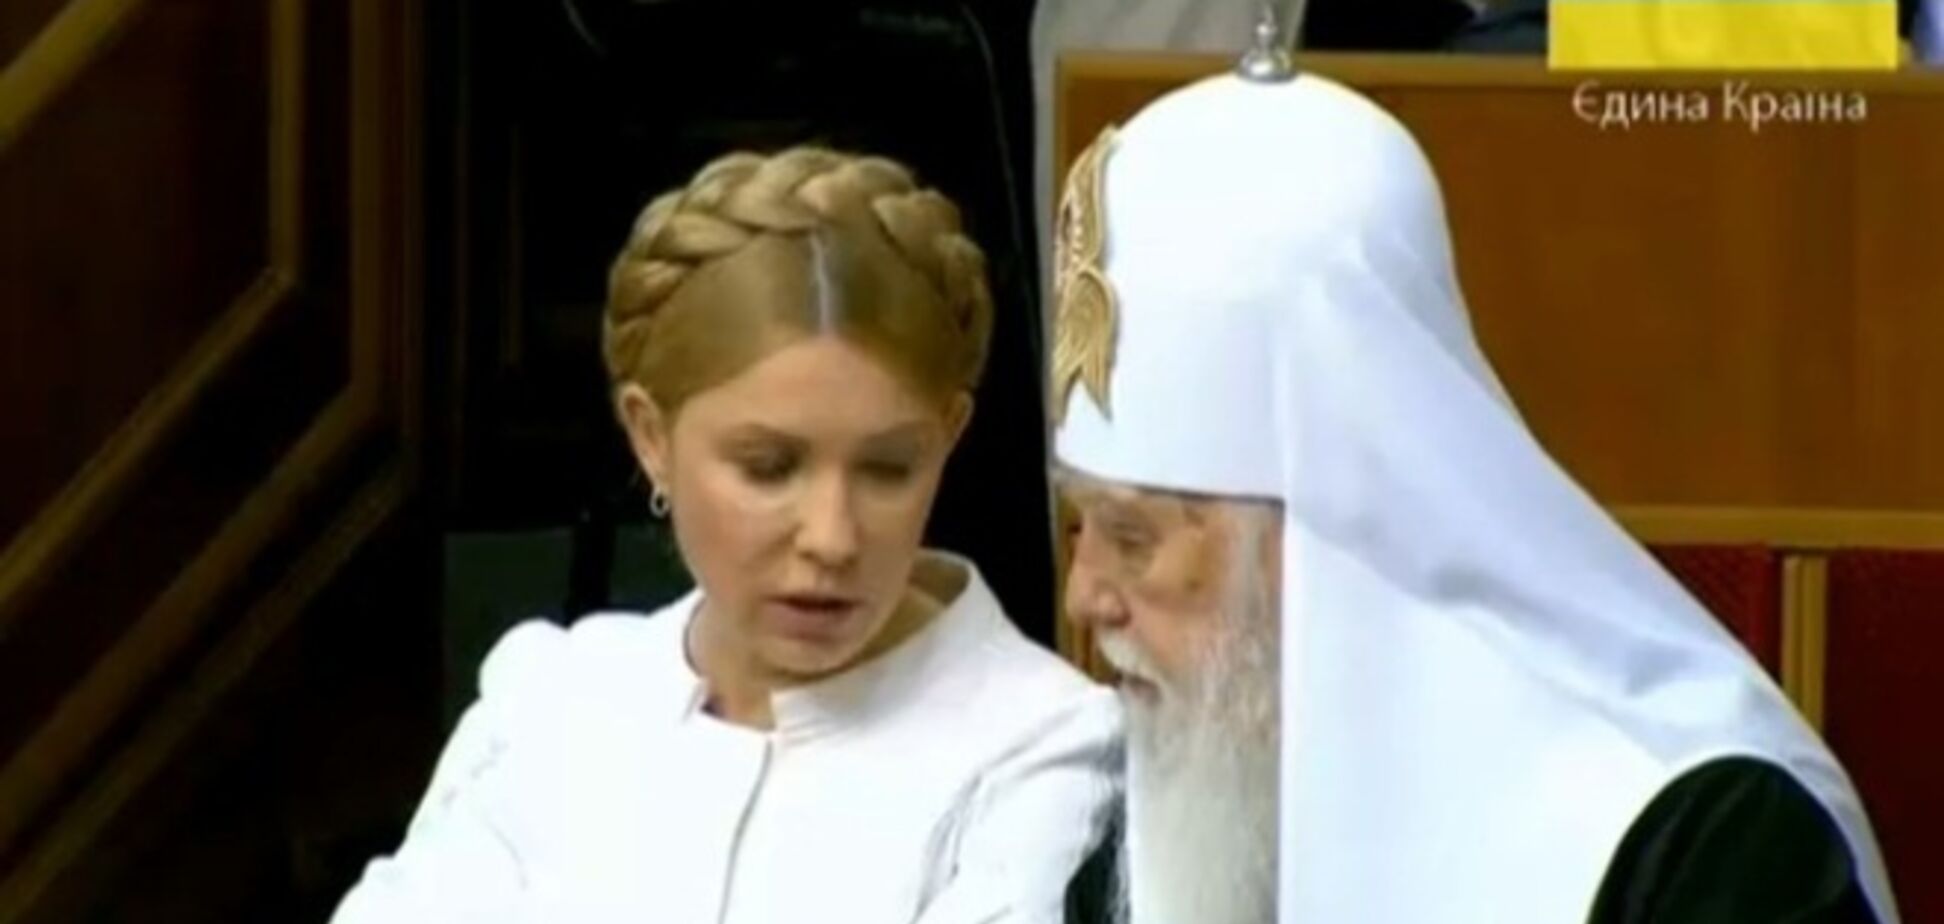 Тимошенко пришла на инаугурацию Порошенко